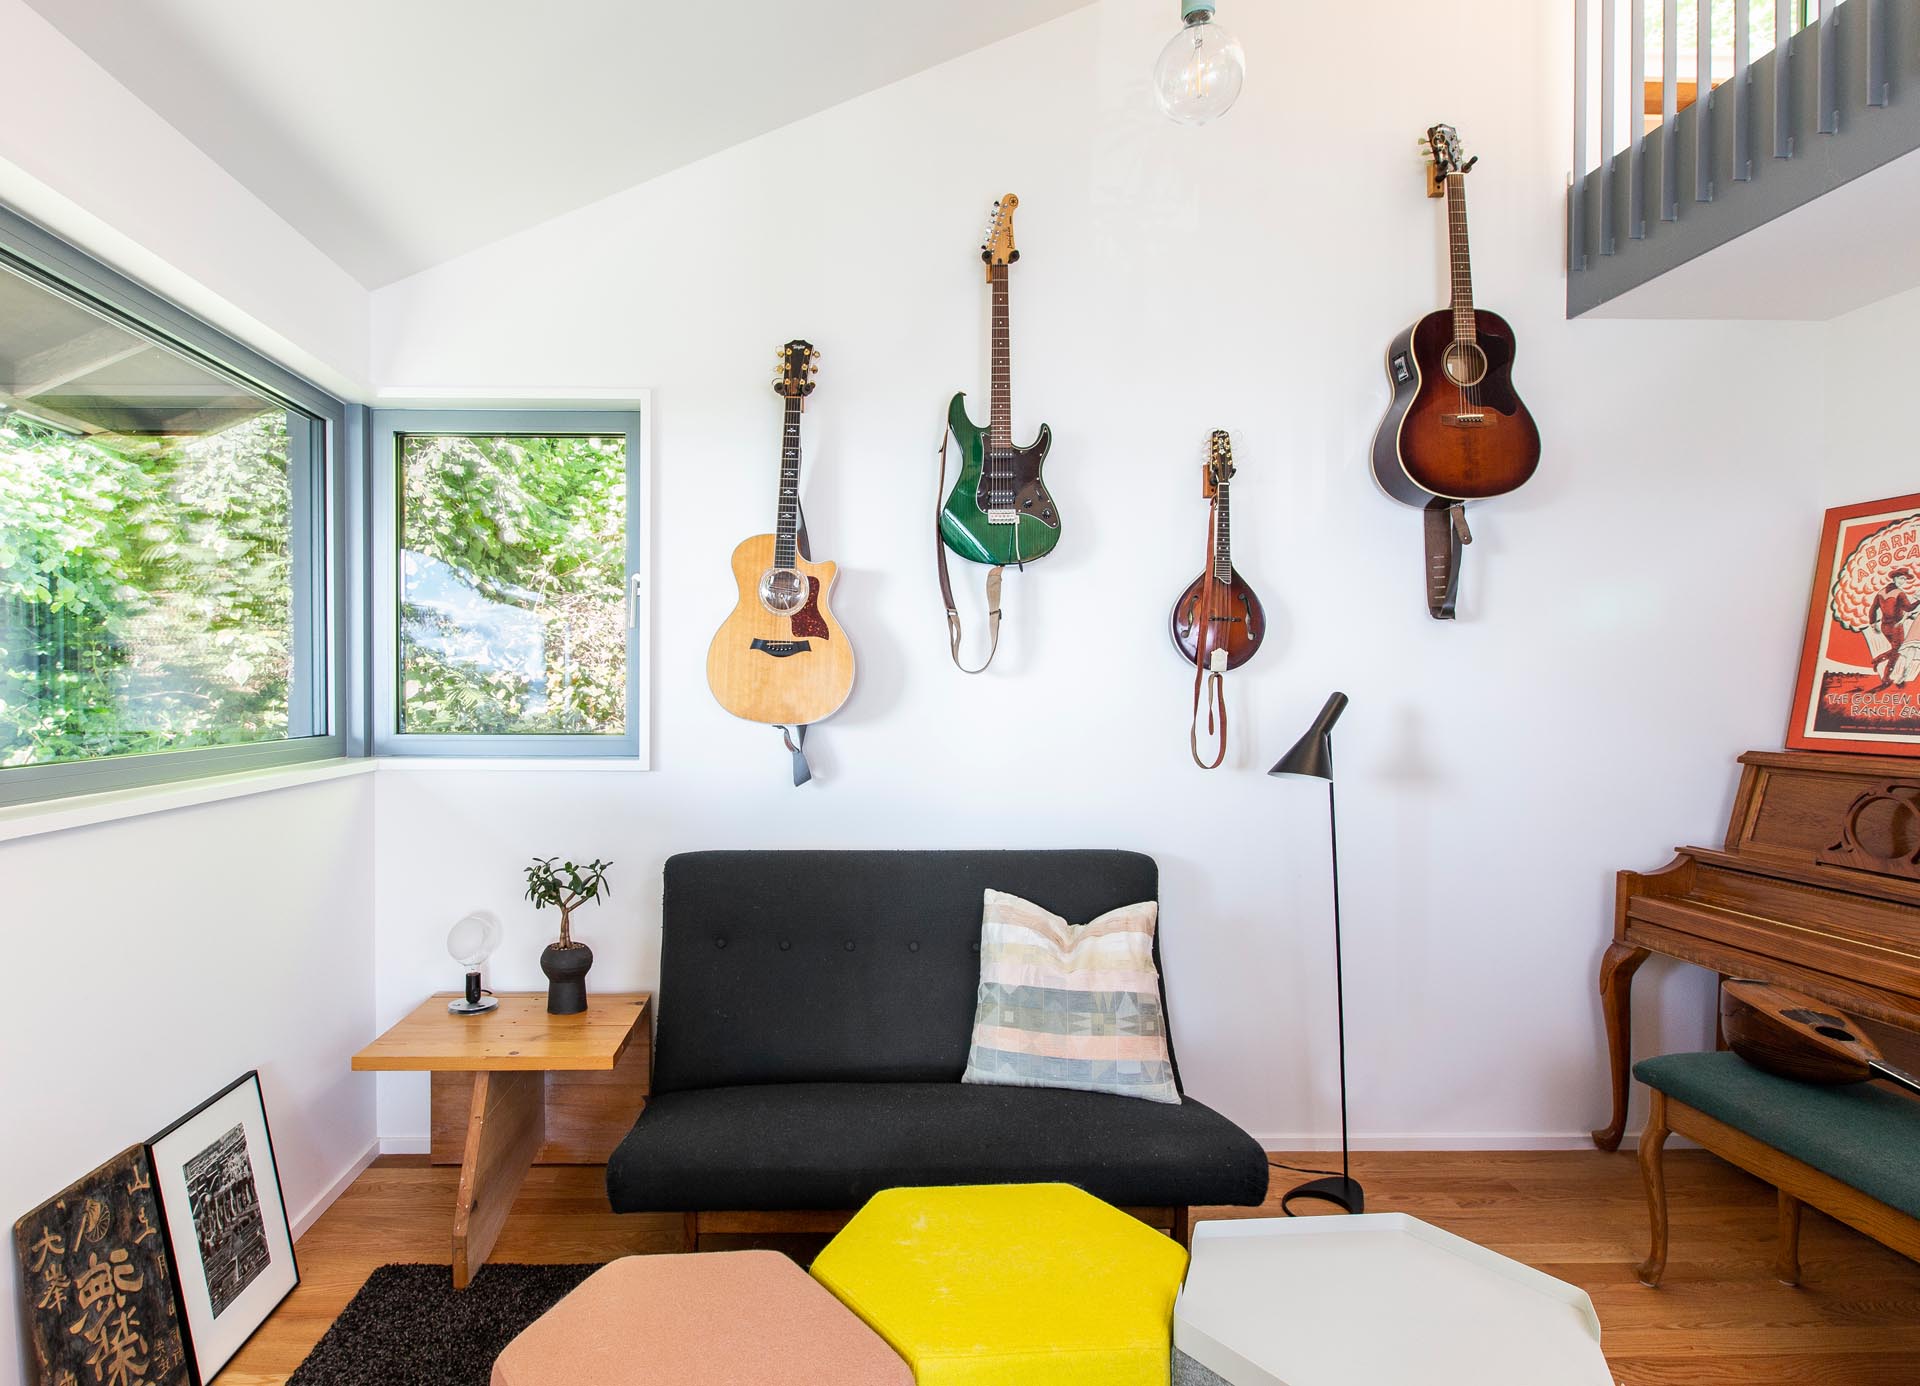 В небольшом уголке гостиной спрятан музыкальный уголок с висячими гитарами, пианино и небольшим диваном.